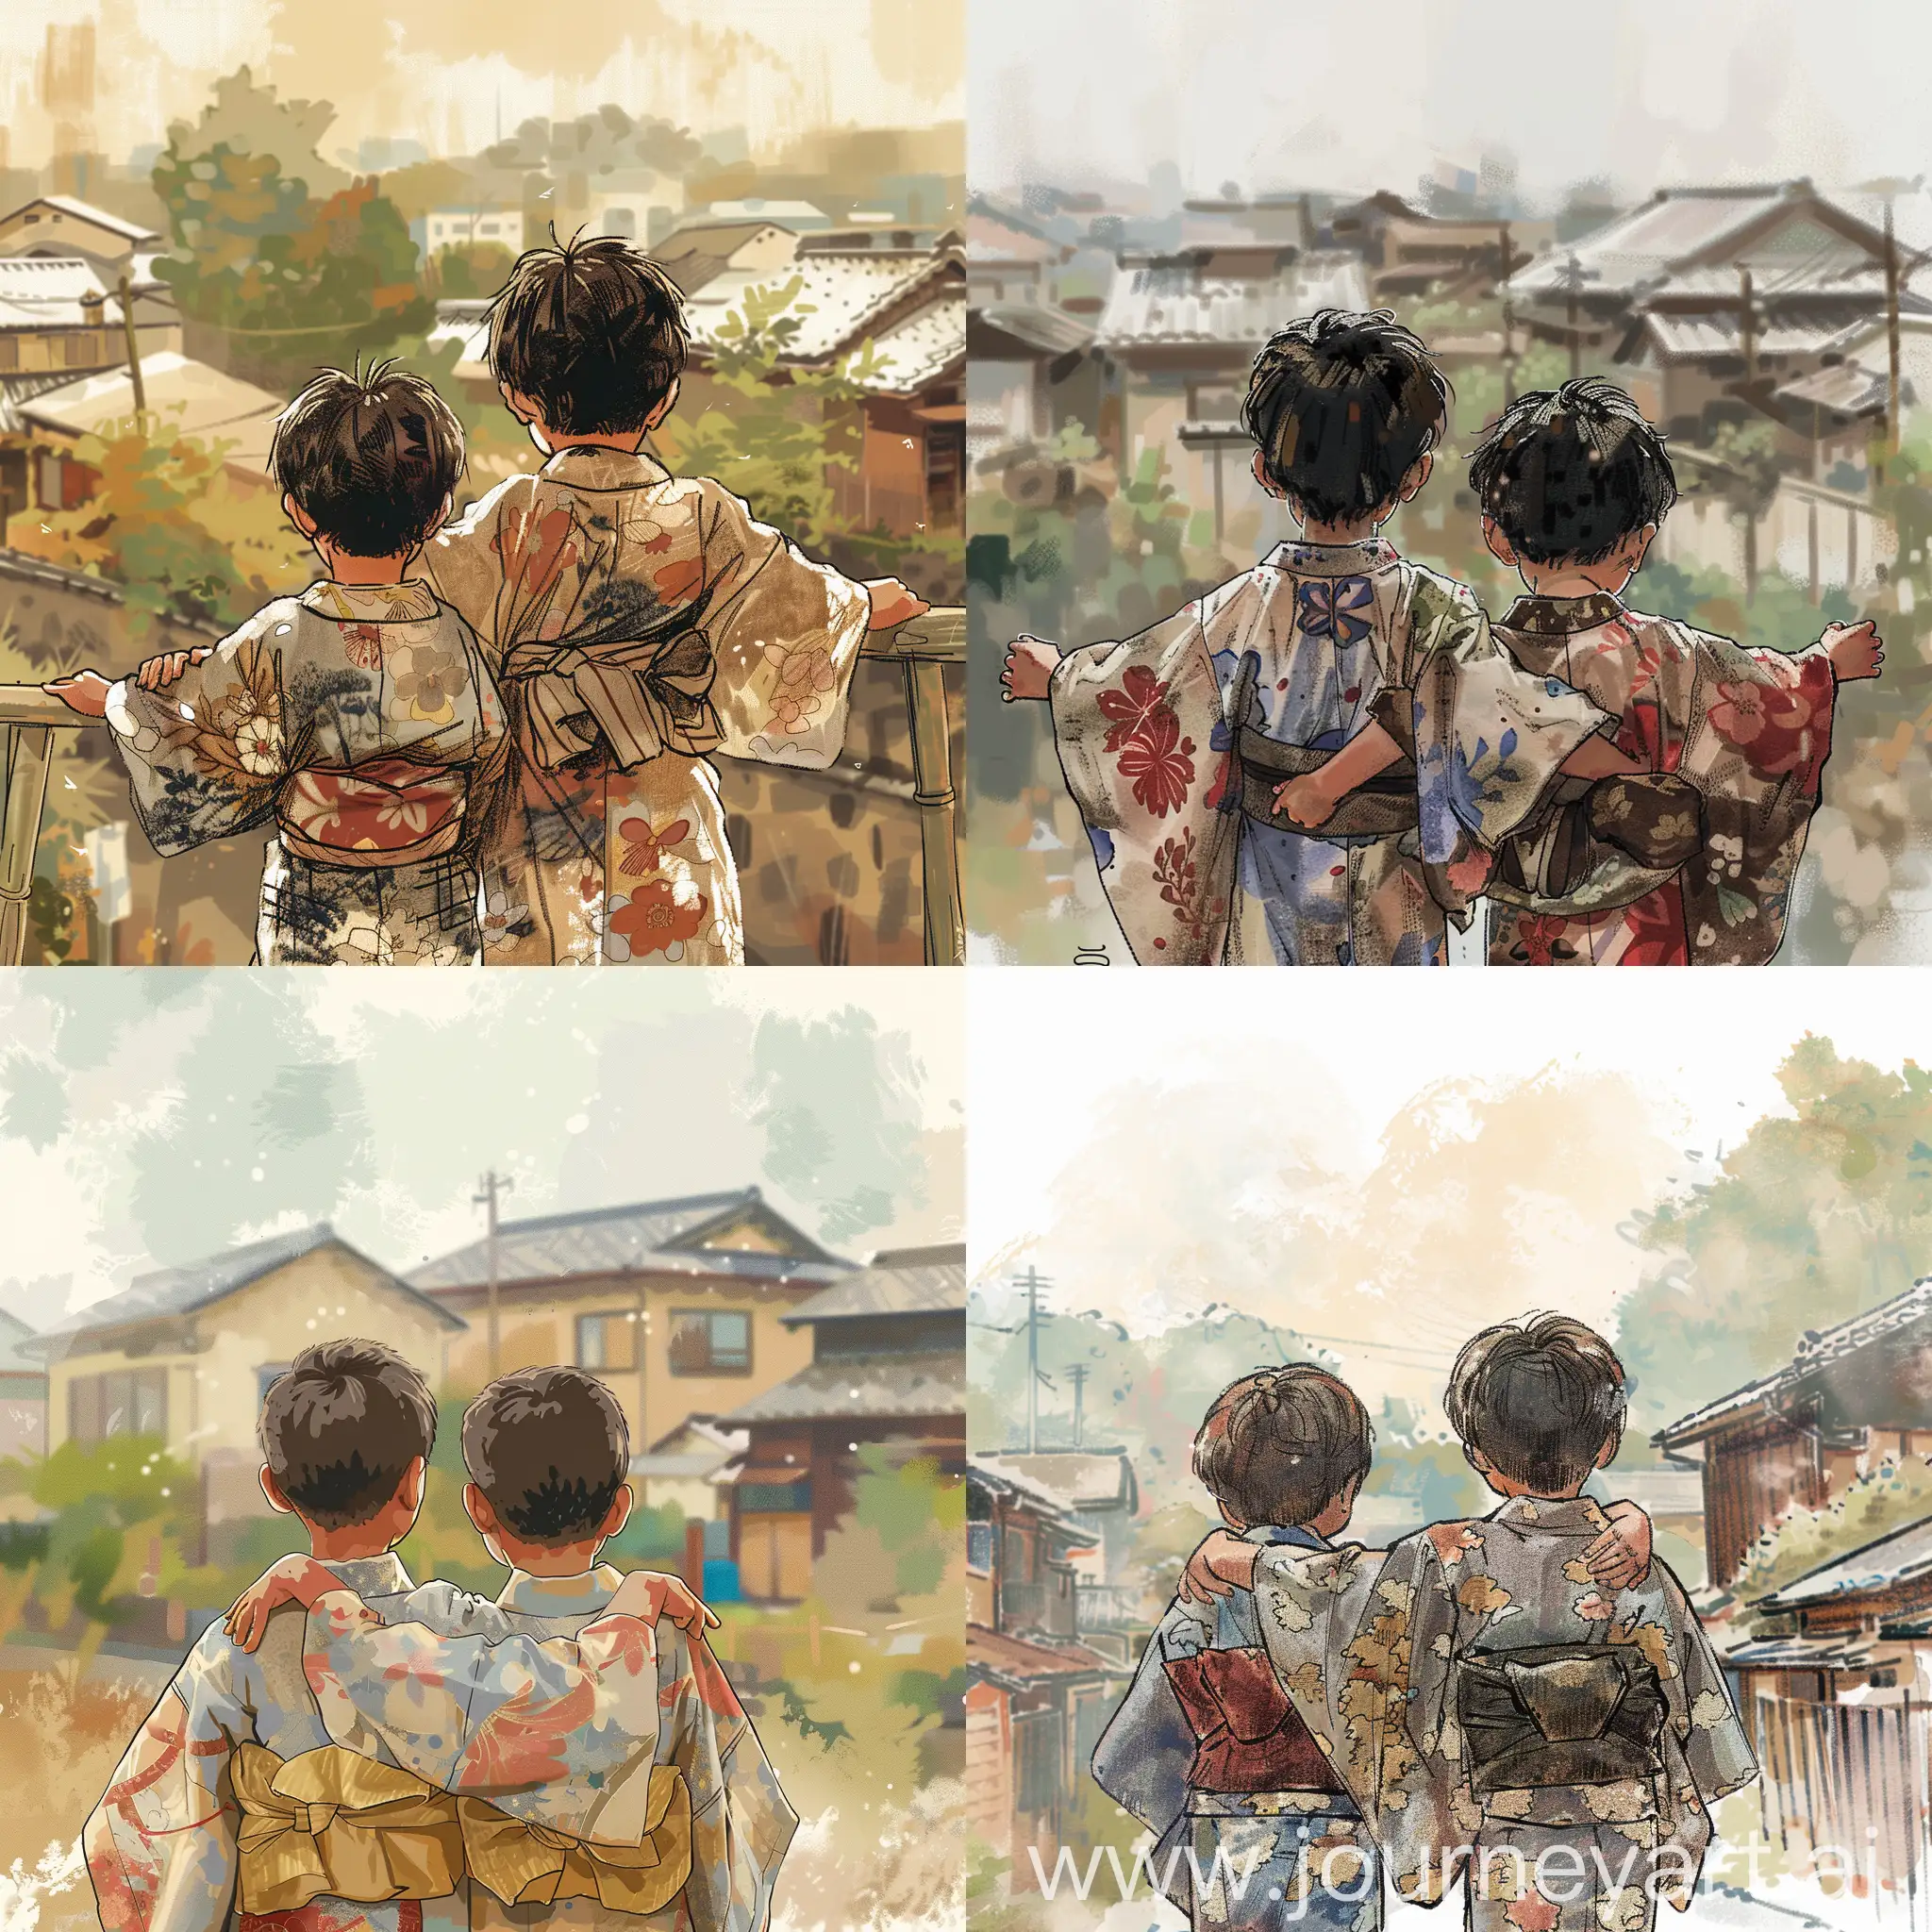 Japanese-Children-in-Kimonos-Embracing-in-Illustrated-Storytelling-Scene